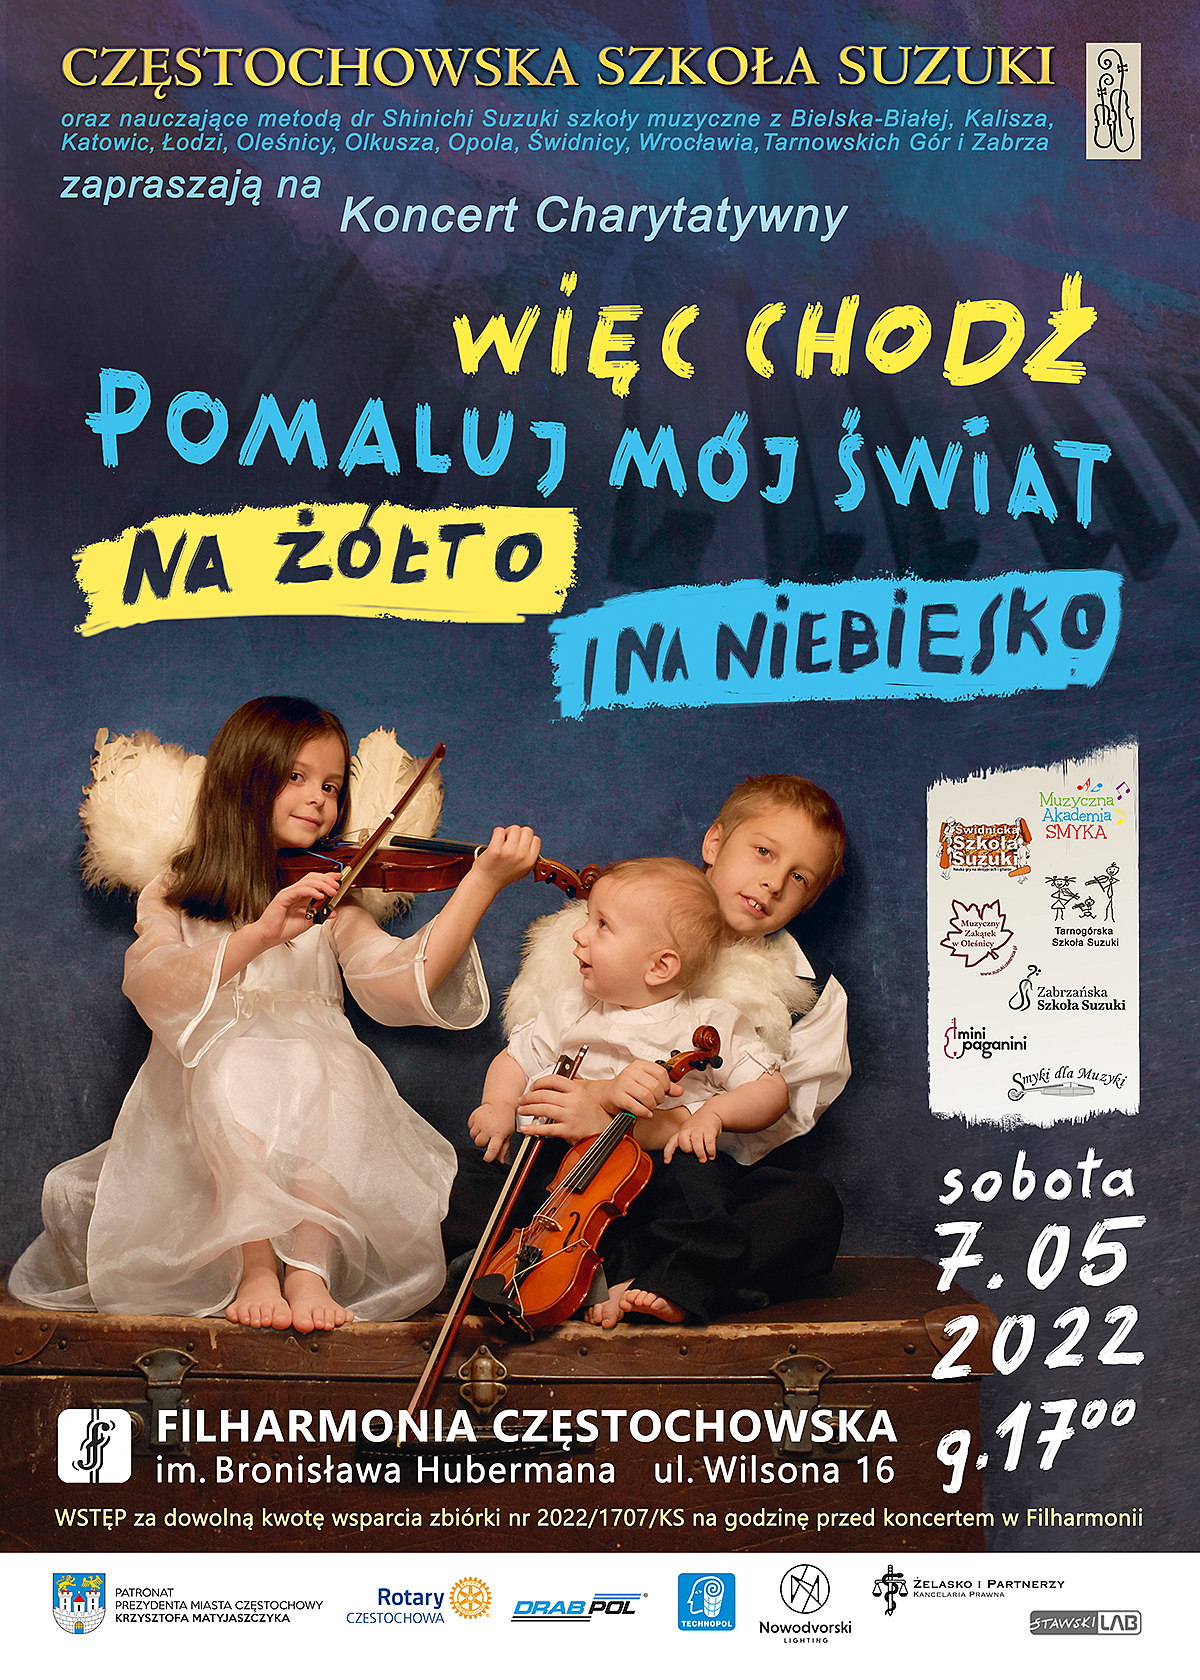 Charytatywny koncert Częstochowskiej Szkoły Suzuki. Na scenie wystąpi ponad 100 młodych artystów 4